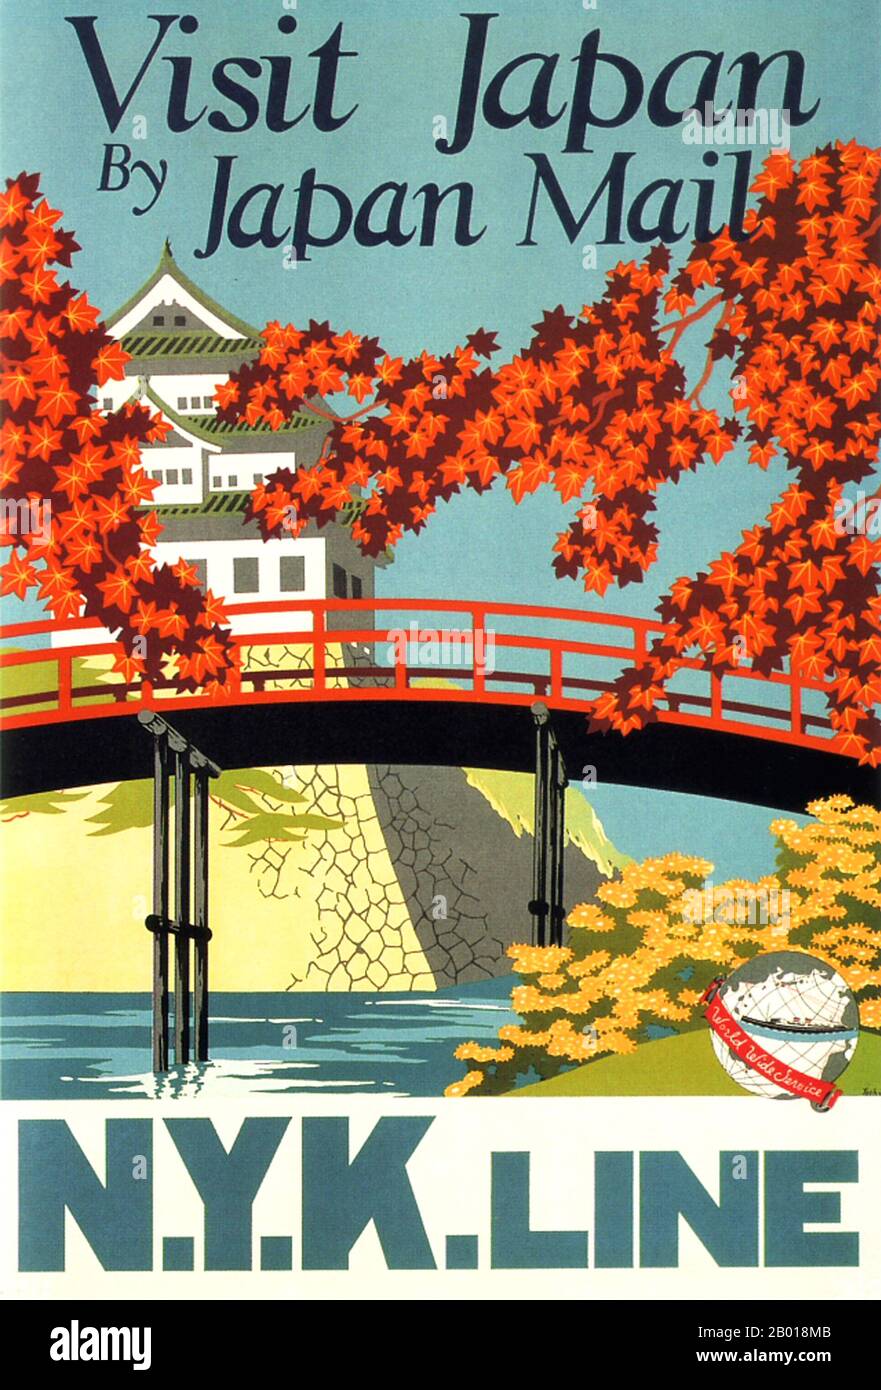 Giappone: Poster pubblicitario per la compagnia di navi a vapore NYK Line, 1916. La fioritura dei ciliegi e il castello incarnano il fascino estetico del Giappone in questo poster della nave a vapore della linea NYK. Foto Stock